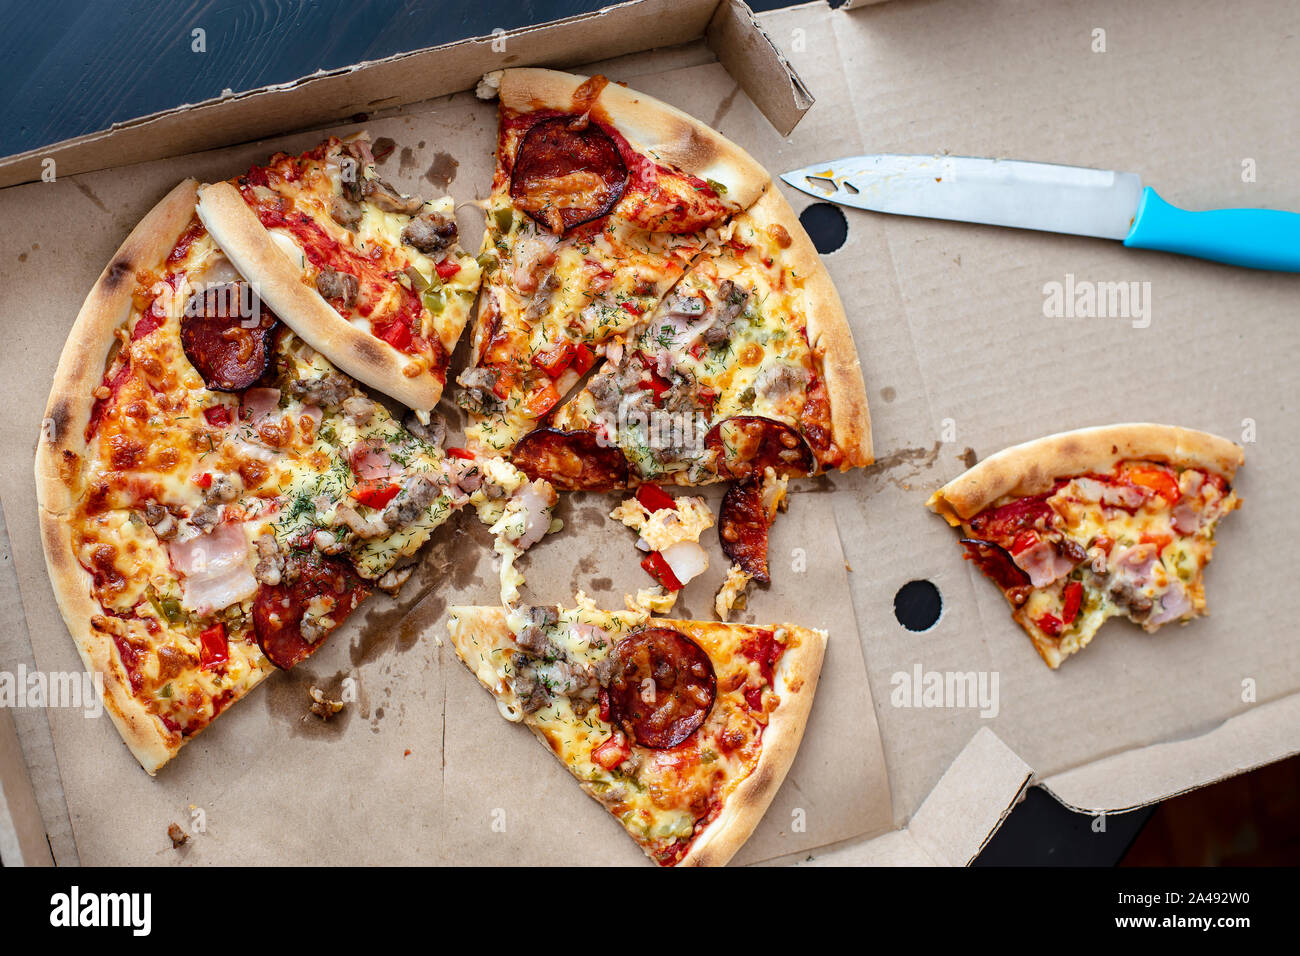 Amigos probamos unos pedazos de pizza entregado y comprendieron que era insípida y mimado y envenenado y no comer y lo dejó en la caja Foto de stock